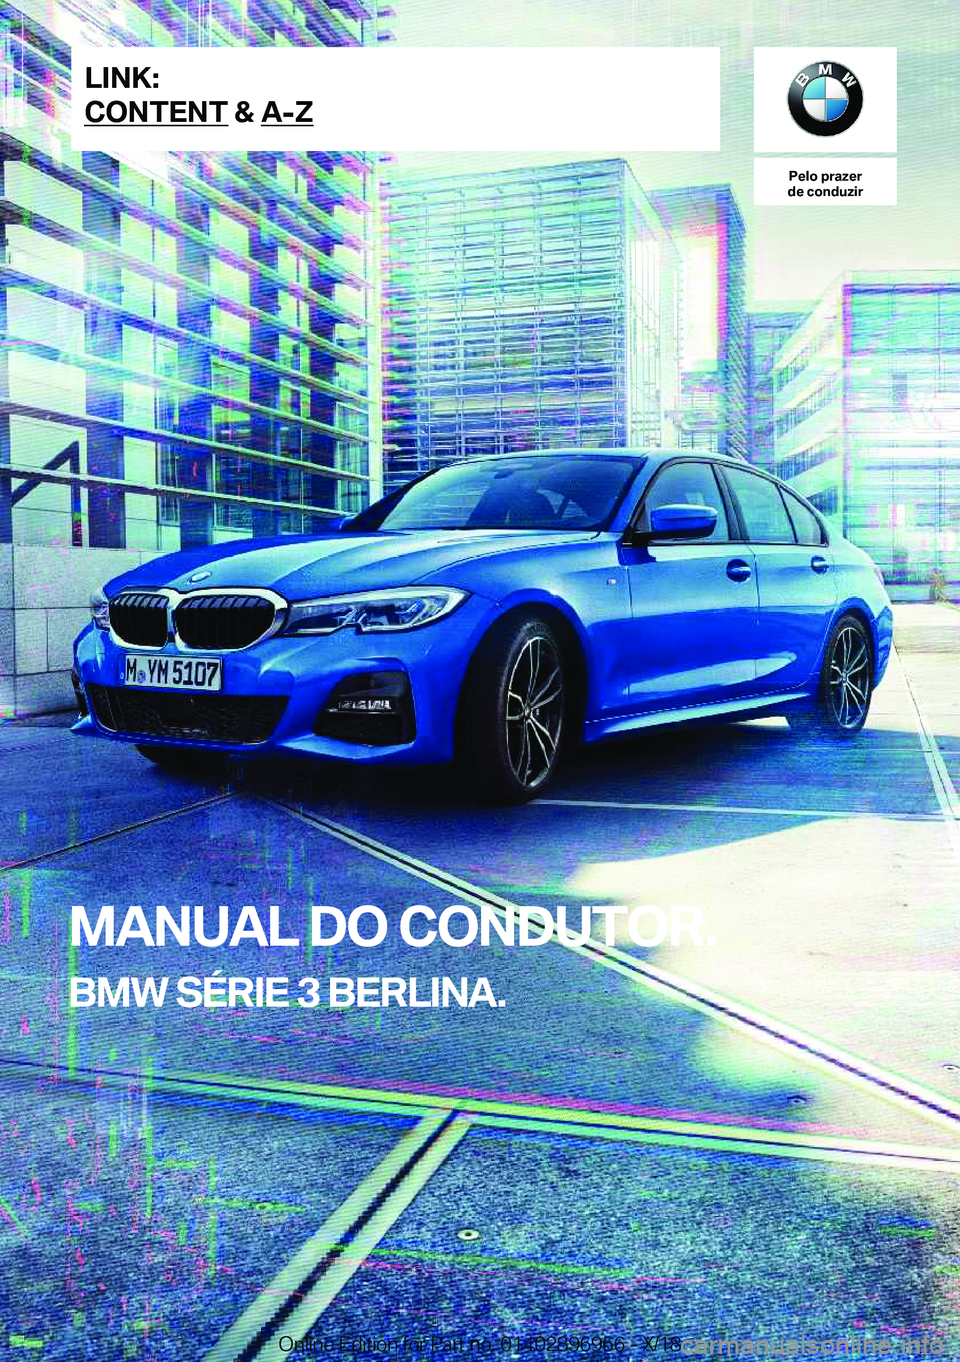 BMW 3 SERIES 2019  Manual do condutor (in Portuguese) �P�e�l�o��p�r�a�z�e�r
�d�e��c�o�n�d�u�z�i�r
�M�A�N�U�A�L��D�O��C�O�N�D�U�T�O�R�.
�B�M�W��S�É�R�I�E��3��B�E�R�L�I�N�A�.�L�I�N�K�:
�C�O�N�T�E�N�T��&��A�-�Z�O�n�l�i�n�e��E�d�i�t�i�o�n��f�o�r�